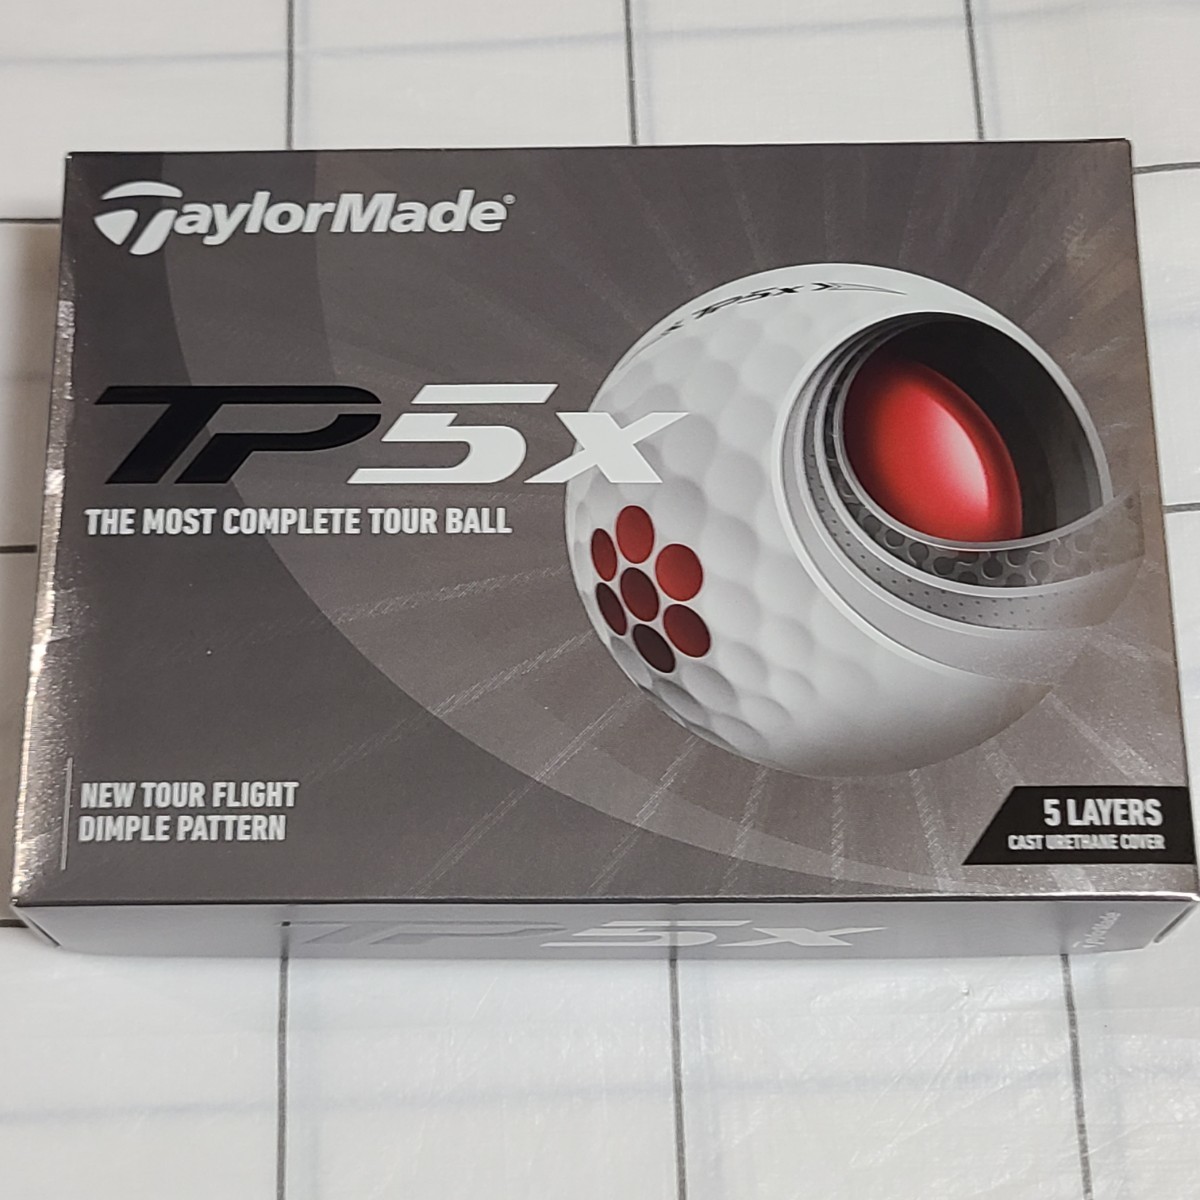 TaylorMade テーラーメイド TP5x ホワイト ゴルフボール 2021年モデル 1ダース_画像1